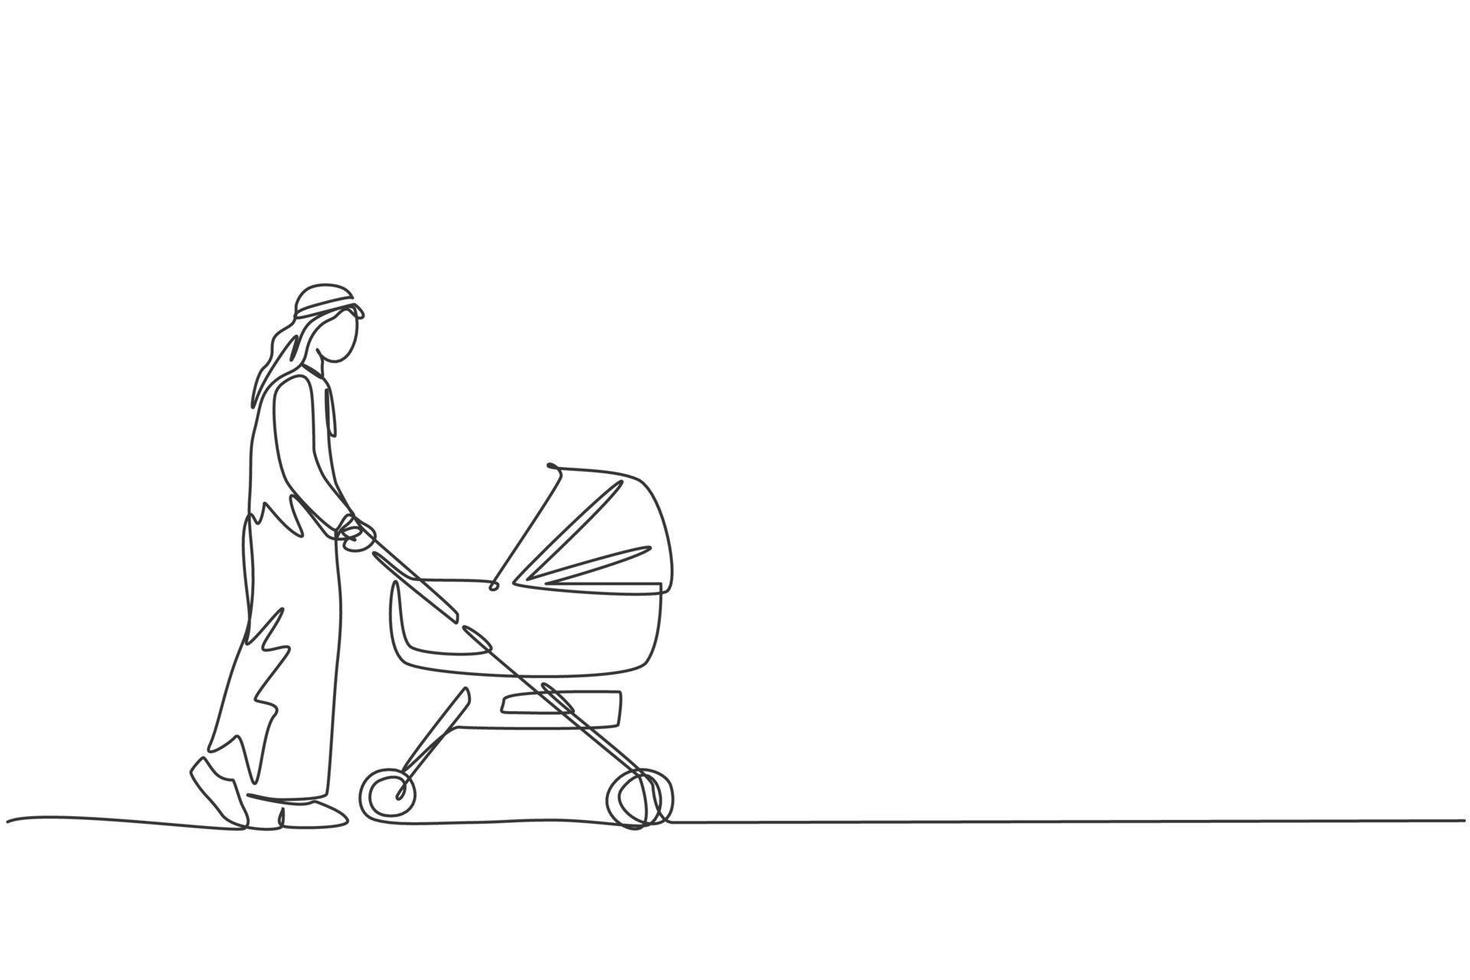 en kontinuerlig linjeteckning av ung arabisk pappa som går och skjuter barnvagn på köpcentret. islamiska muslimska lyckliga familj föräldraskap koncept. dynamisk enkel linje rita design vektor illustration